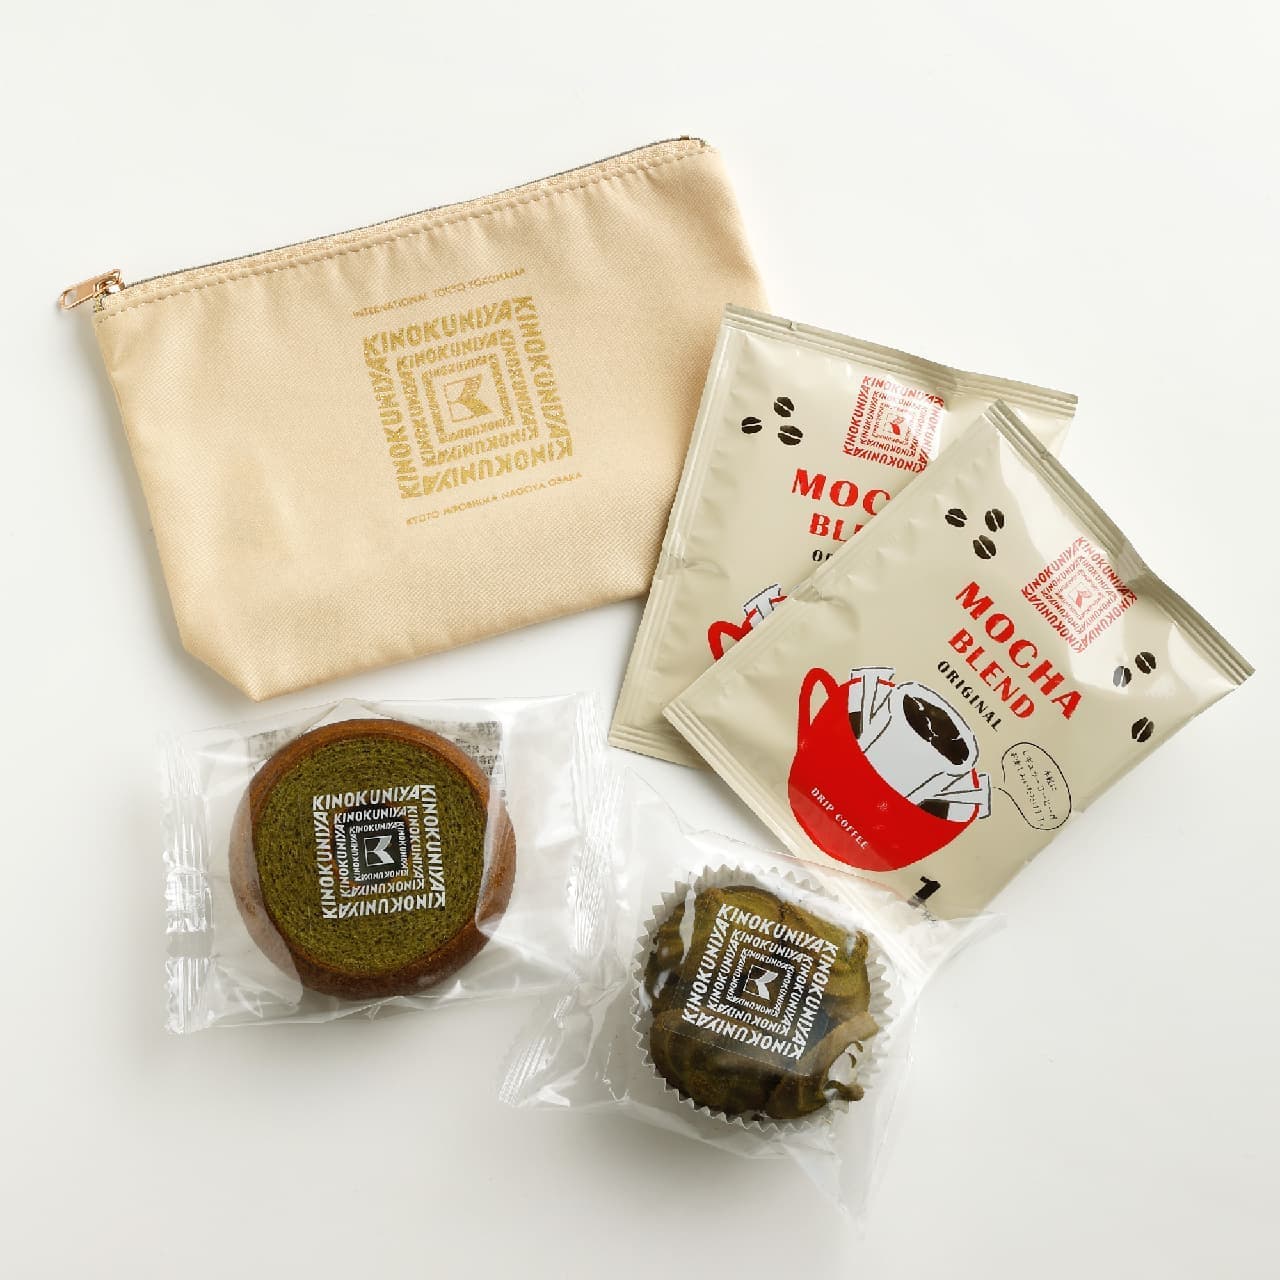 KINOKUNIYA Sweets Pouch (green tea sweets & coffee)